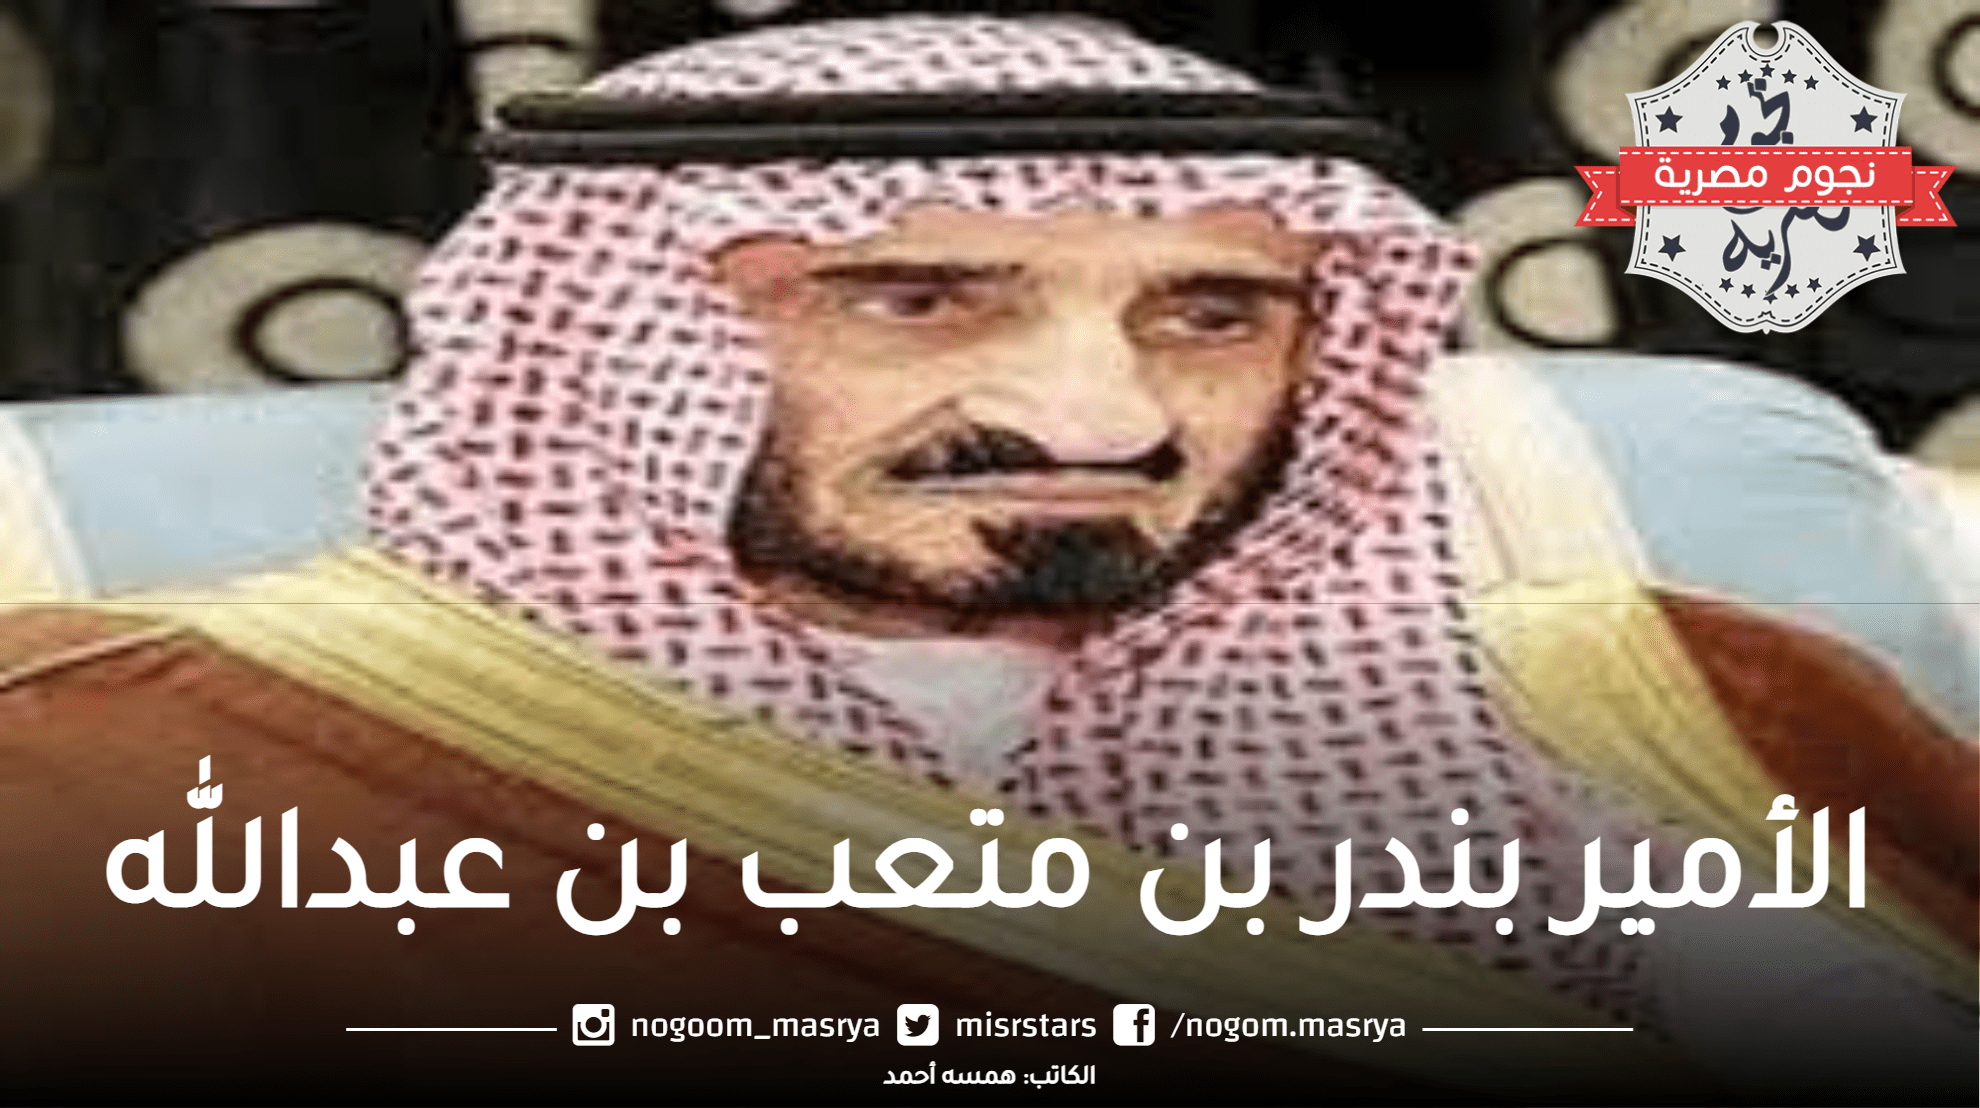 الديوان الملكي يعلن وفاة الأمير بندر بن متعب بن عبدالله ابن سعود